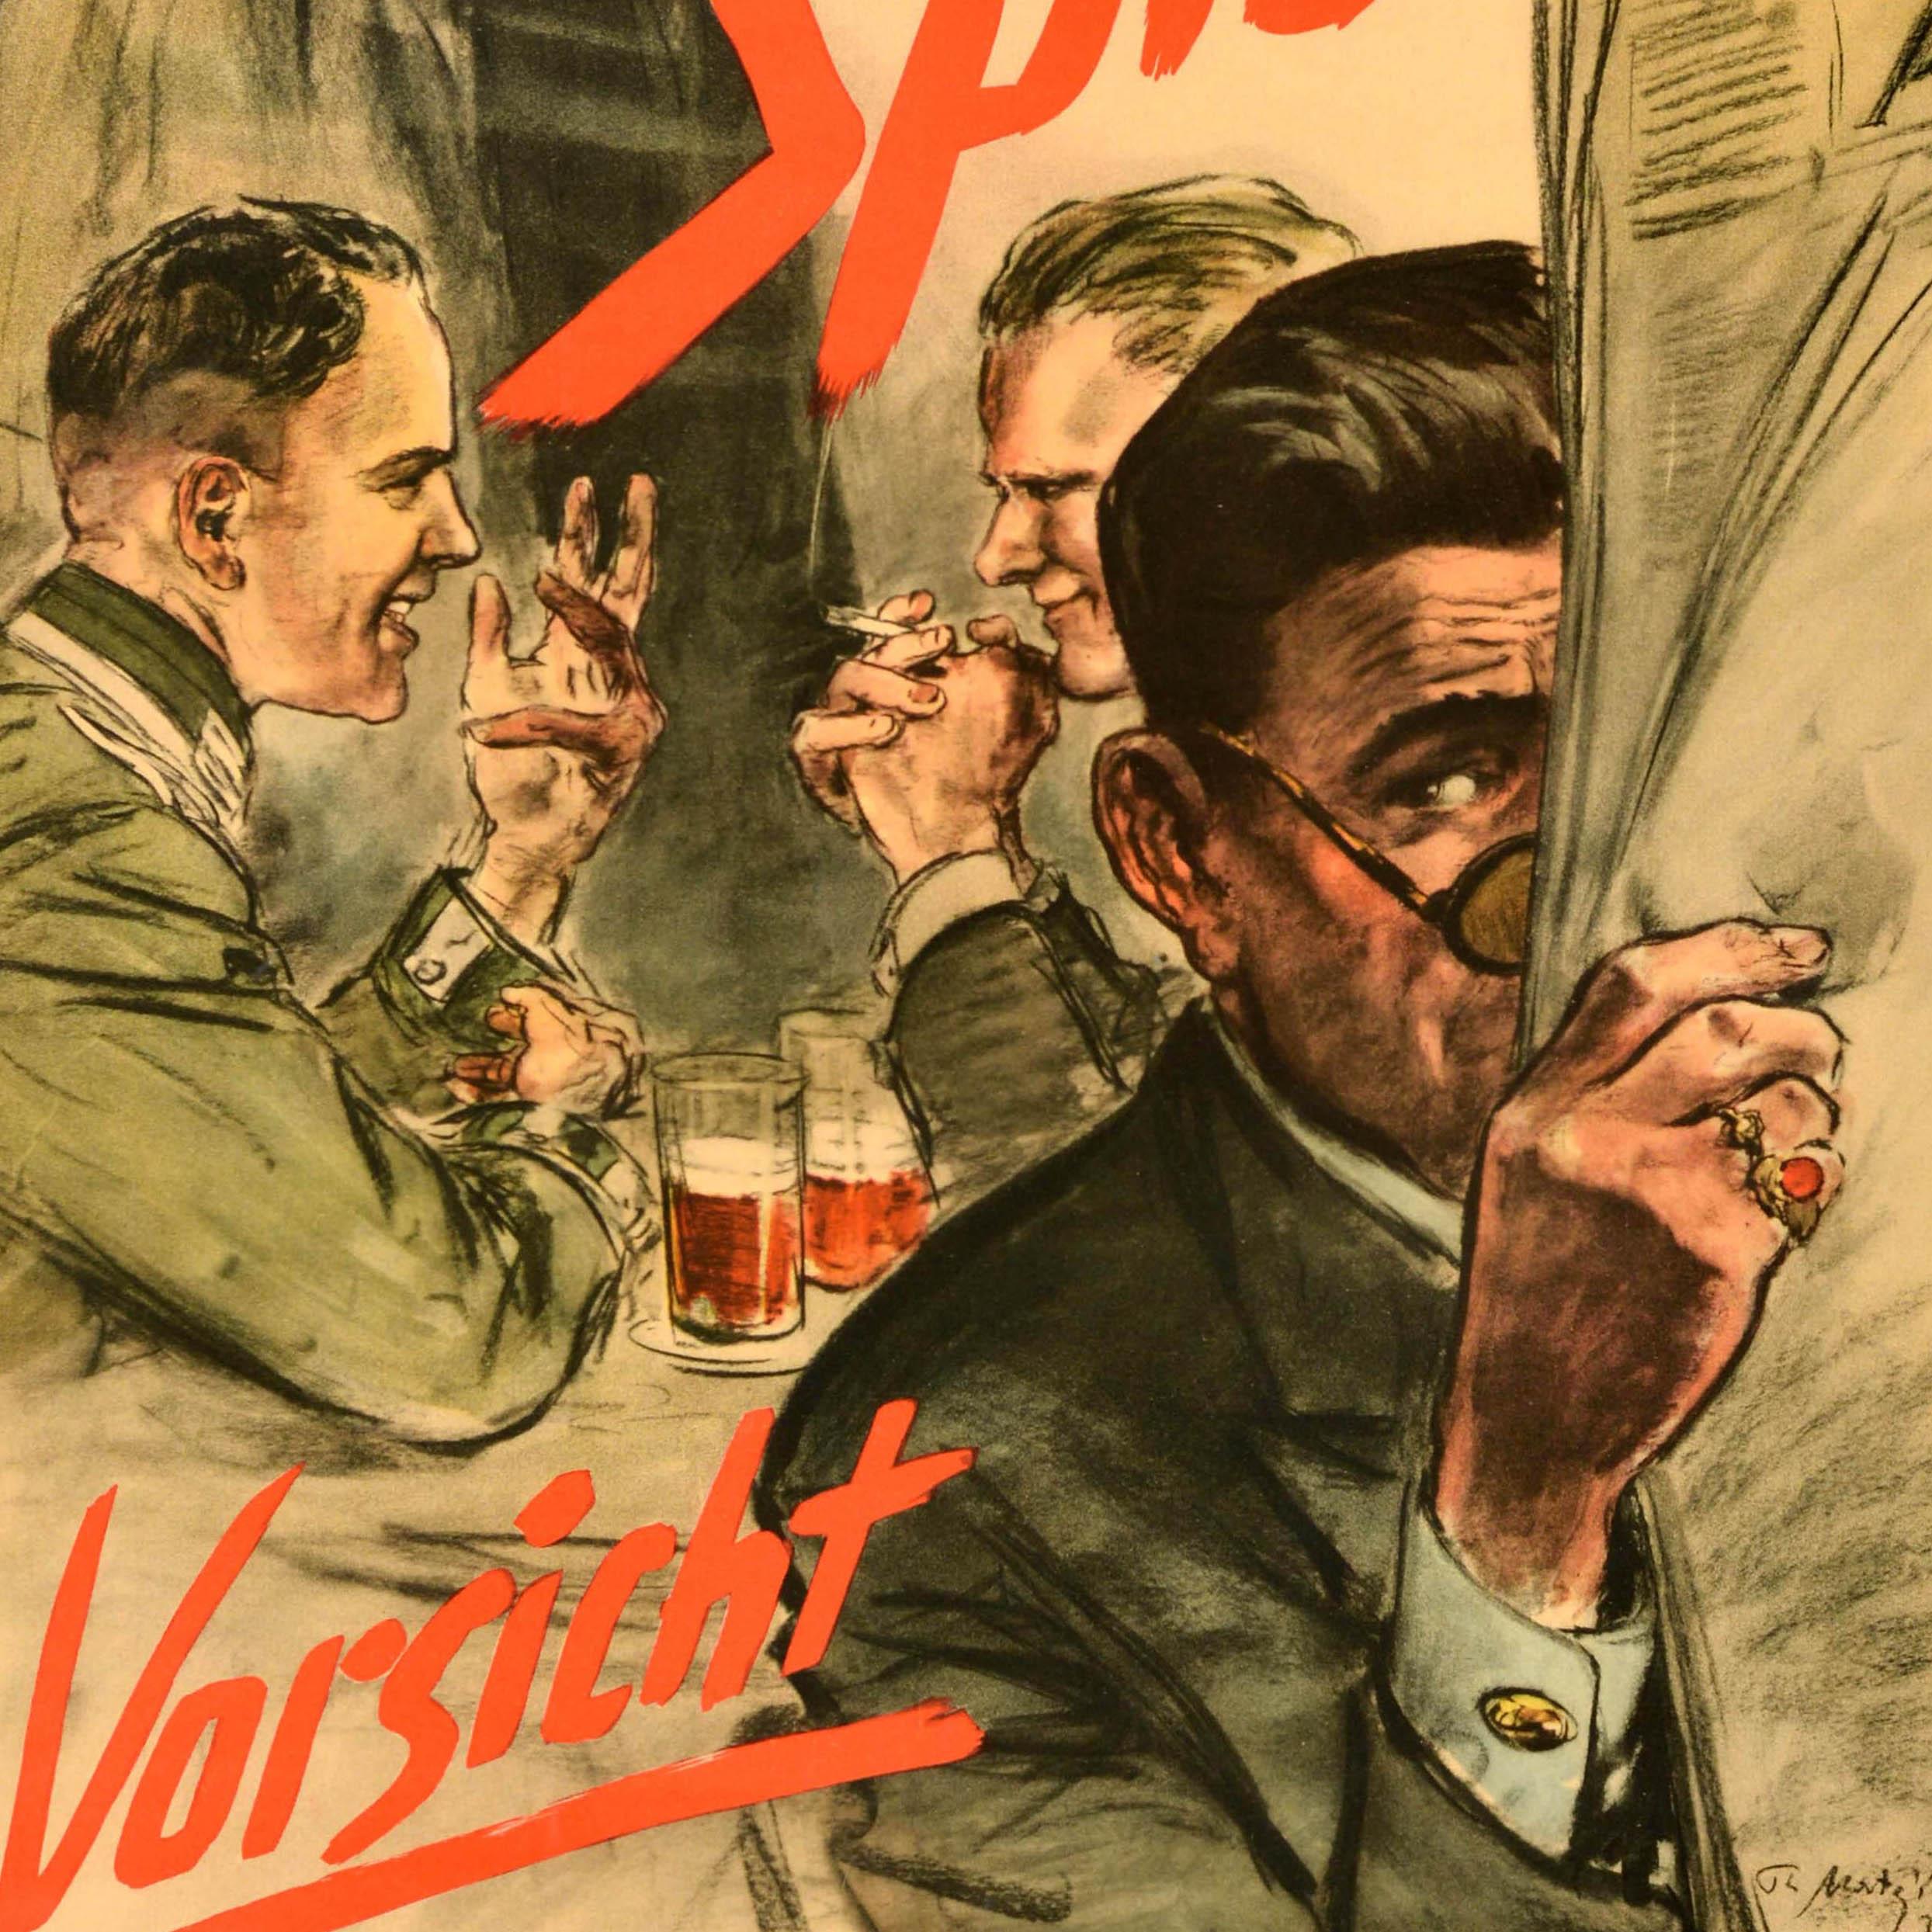 Original Vintage Propaganda Poster - Achtung Spione Vorsicht bei Gesprächen! / Achtung Spione Vorsicht bei Gesprächen! - mit einer Illustration von zwei Soldaten, die sich bei einem Bier unterhalten, während ein Mann im Vordergrund zuhört und so